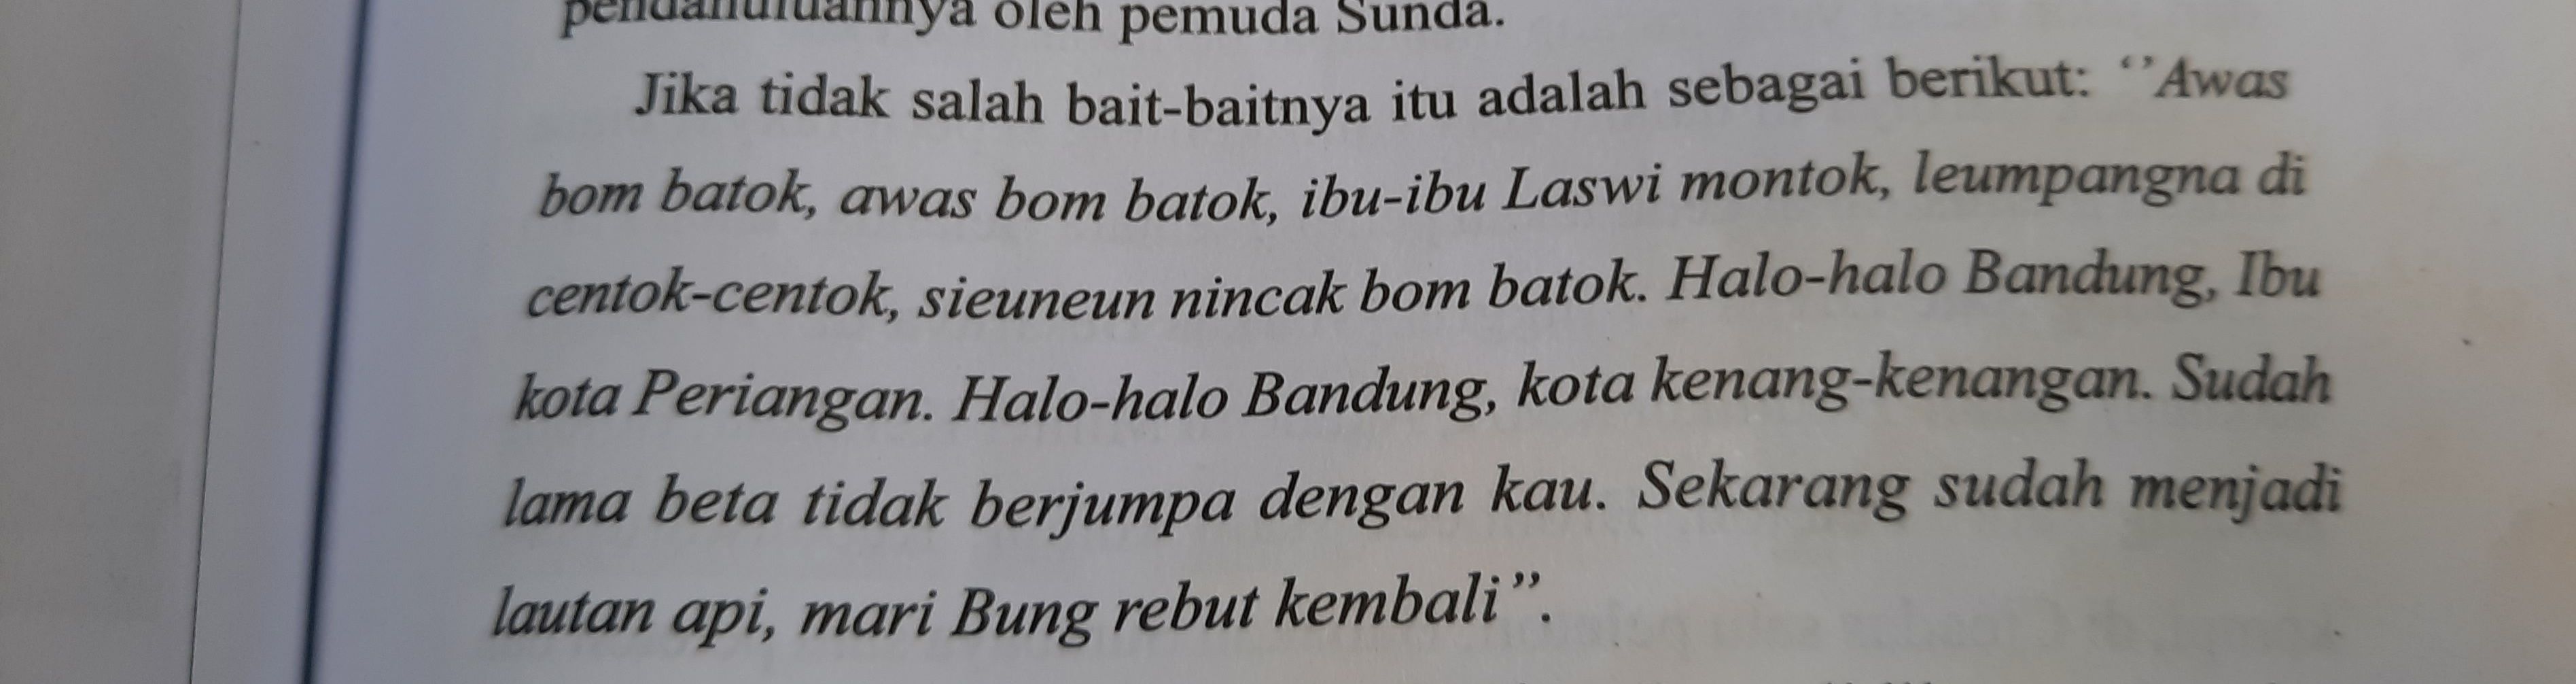 Repro buku, Tiada Berita Dari Bandung Timur 1945-1947 yang ditulis R.J. Rusady W. tentang lirik lagu "Halo-Halo Bandung" tempo dulu.